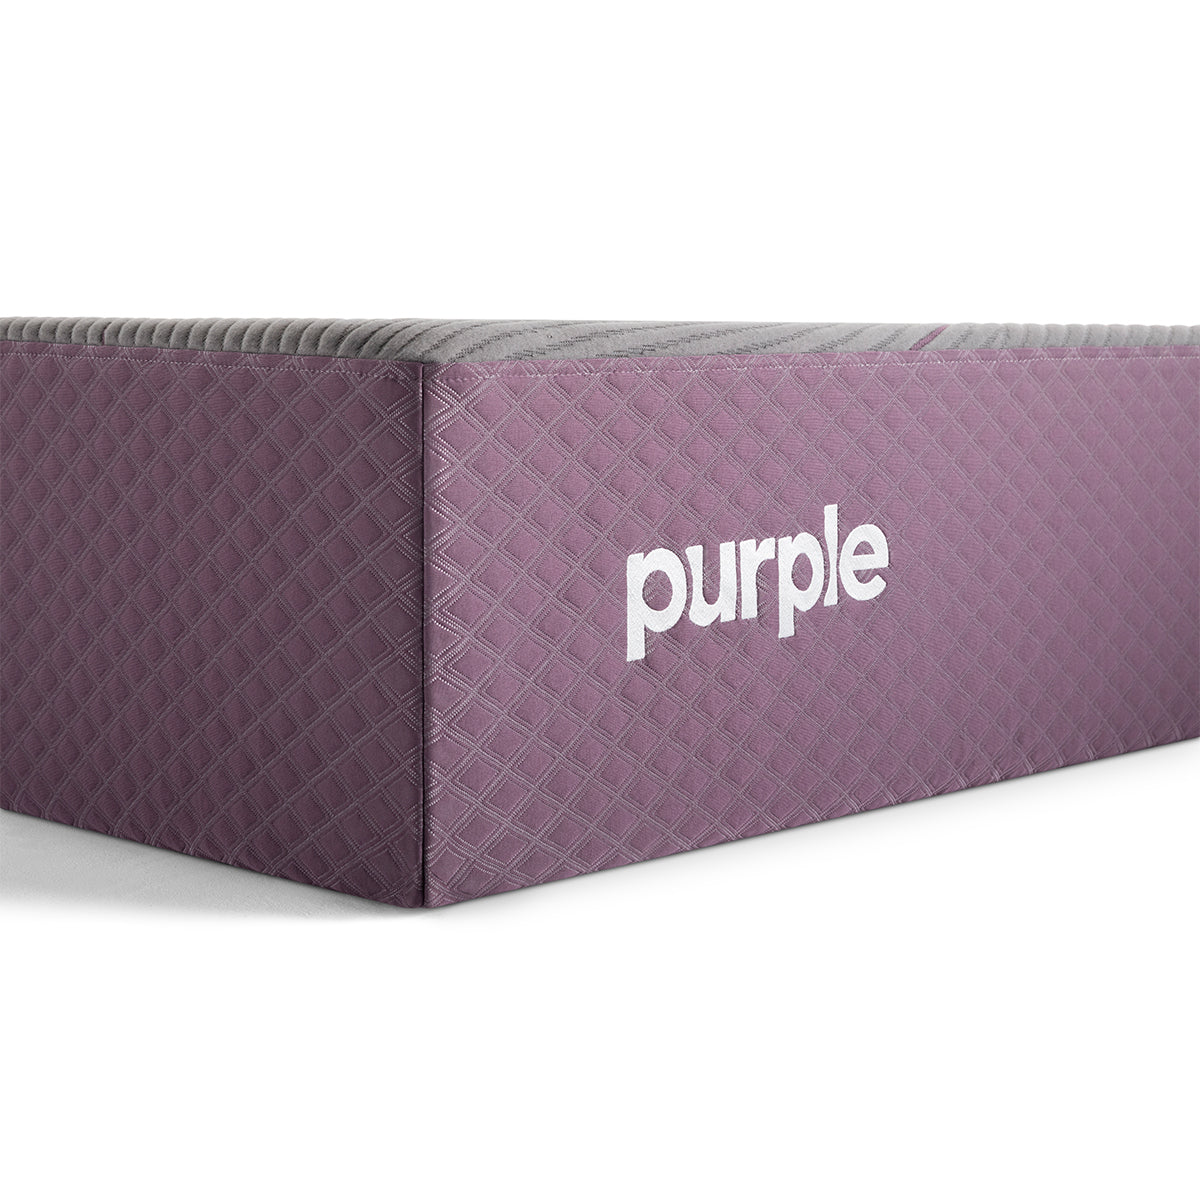 Purple Restore Premier Soft Mattress corner detail